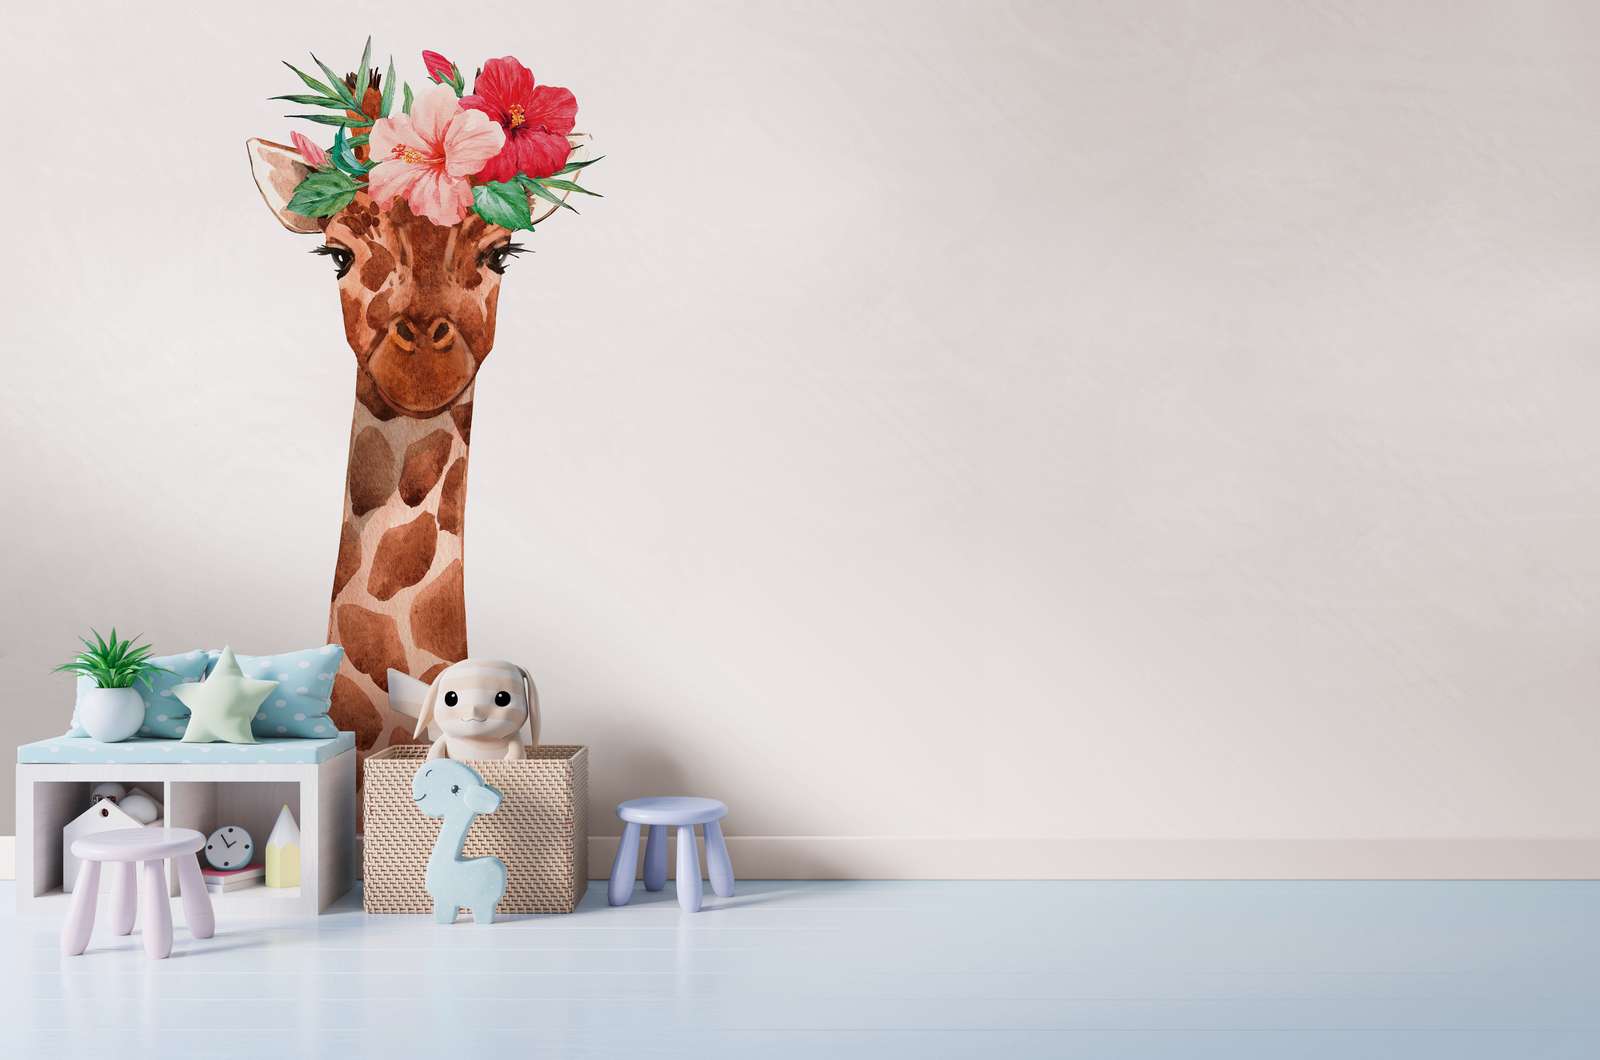             Kinderkamerbehang met giraffe en bloemen hoofdtooi - Wit, kleurrijk
        